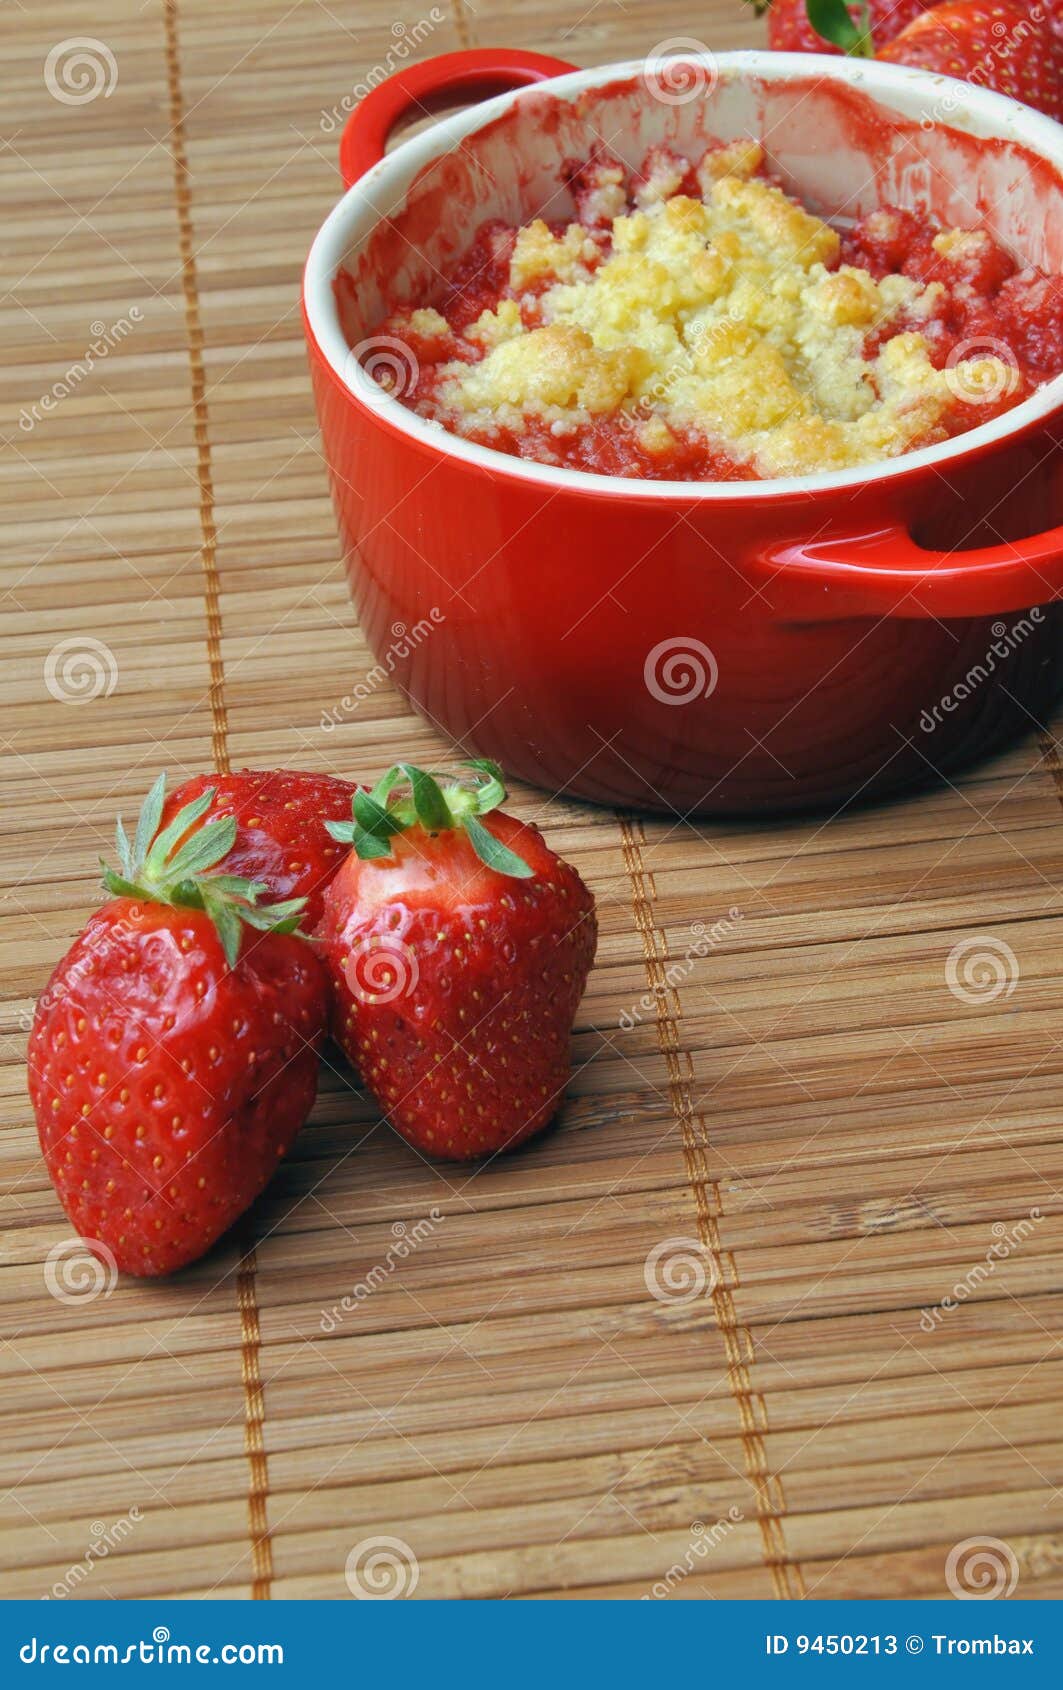 strawberry crumble in a ramekin 2